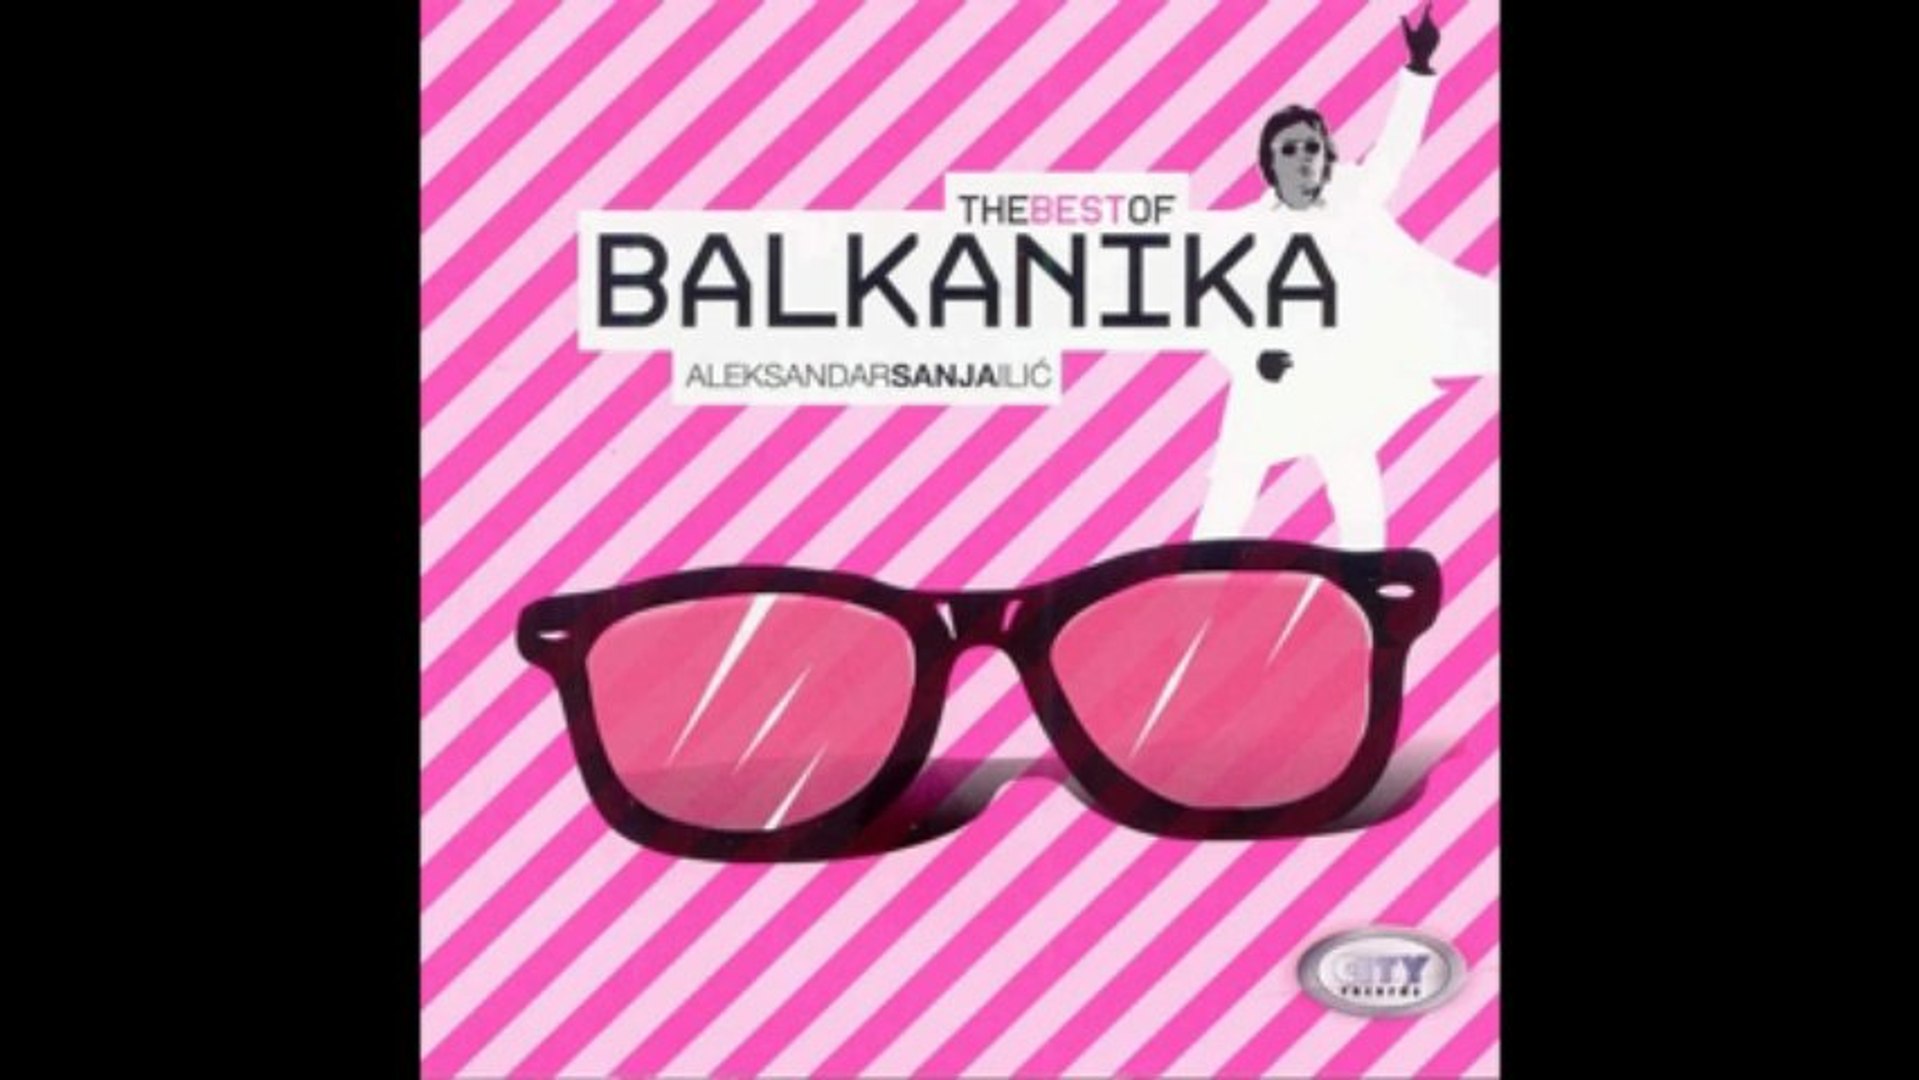 Balkanika - Balkan 2000 - (Audio 2011) HD - video Dailymotion